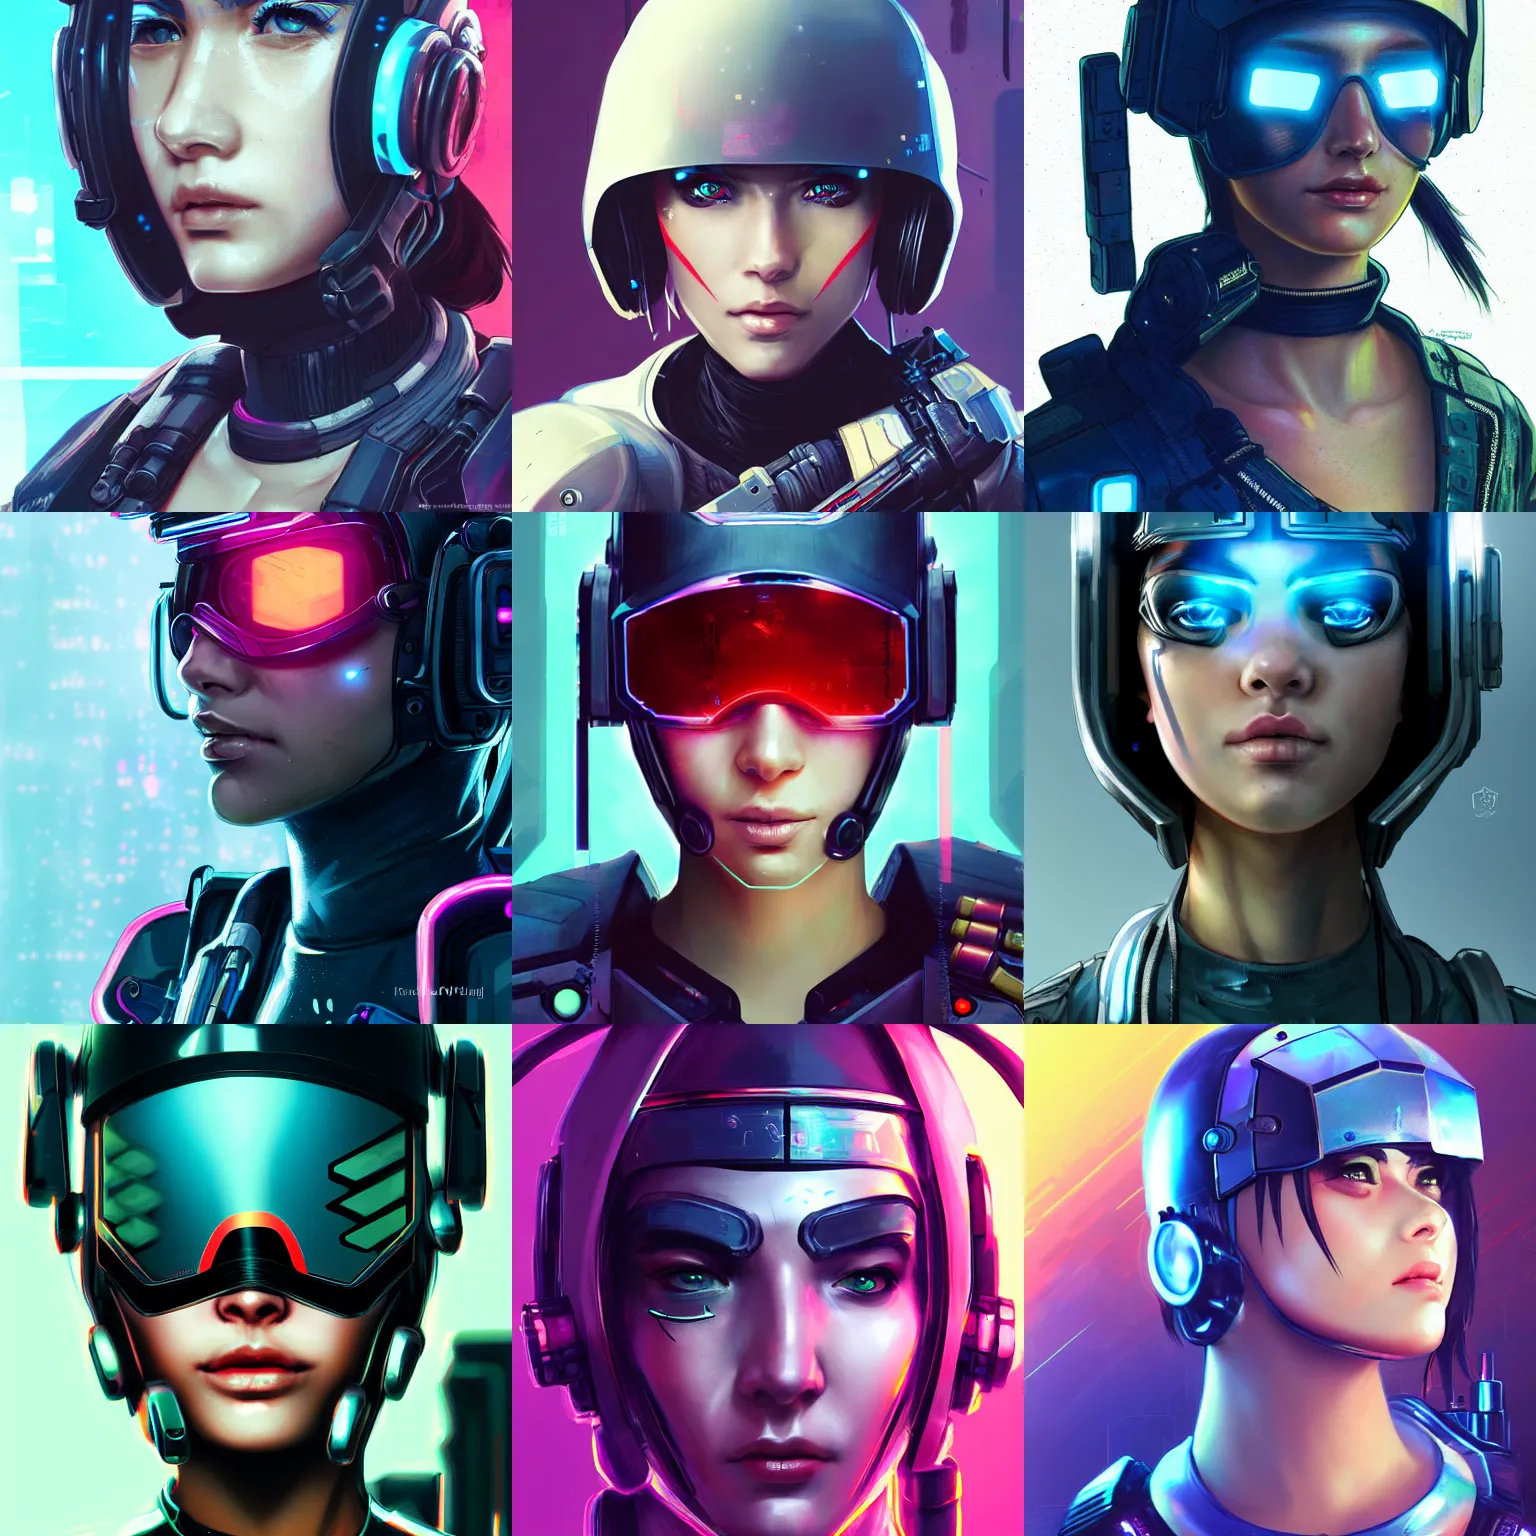 Prompt: face close - up of a cyberpunk girl soldier in a cyberpunk helmet, futuristic helmet, by ross tran, cyberpunk 2 0 7 7, anime art, accurate anatomy